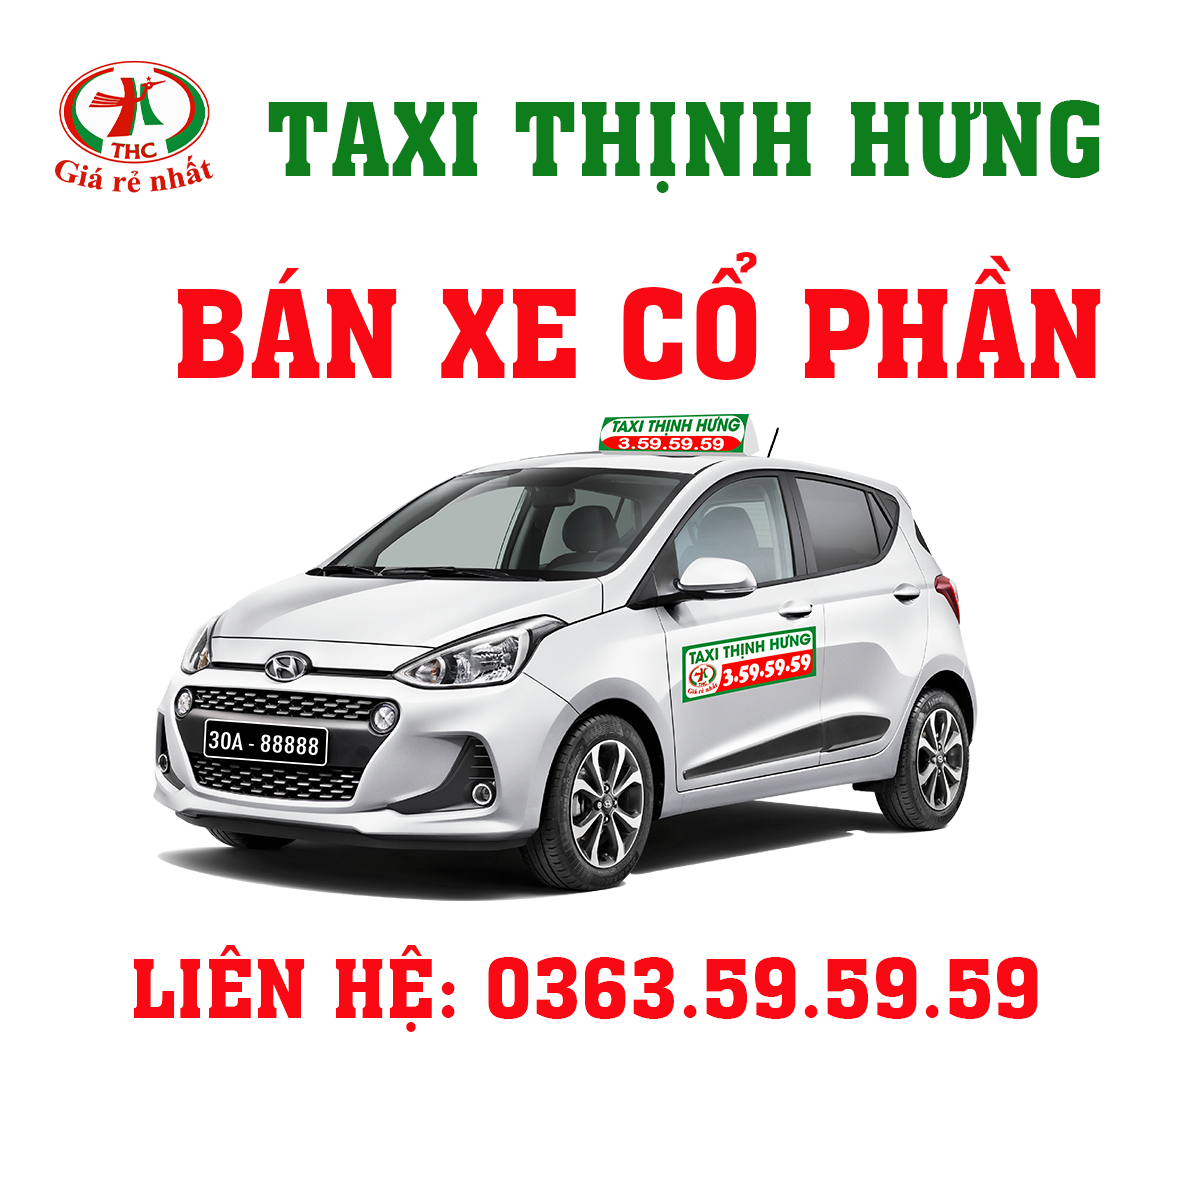 Kỷ niệm 2/9 Thịnh Hưng Group hỗ trợ bán xe trả góp cho anh em như sau